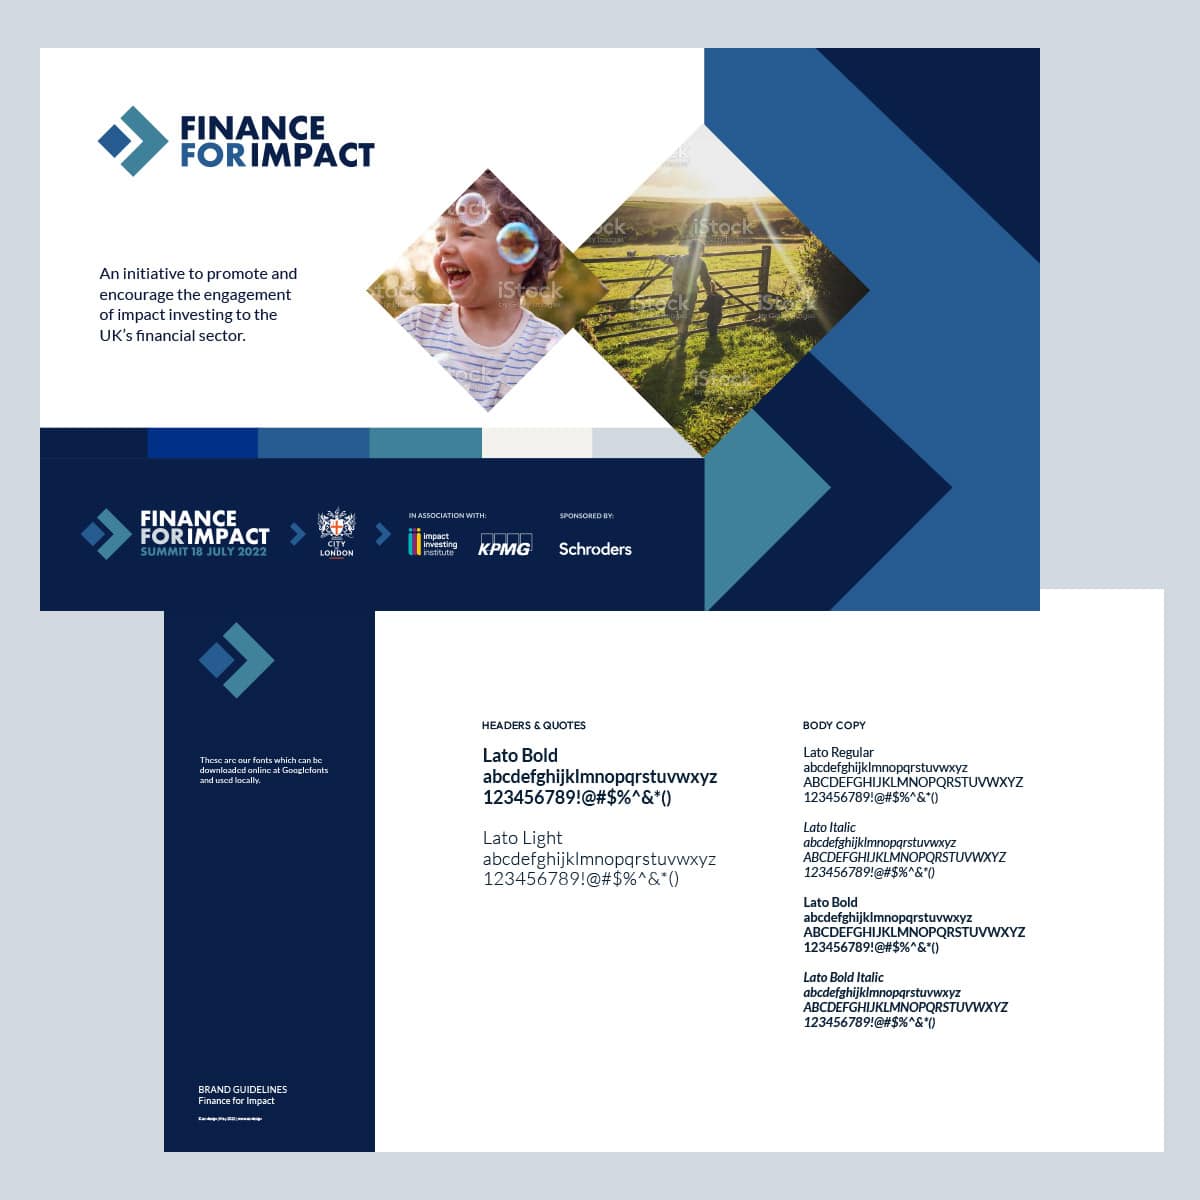 Finance for Impact Branding - brand guideline document